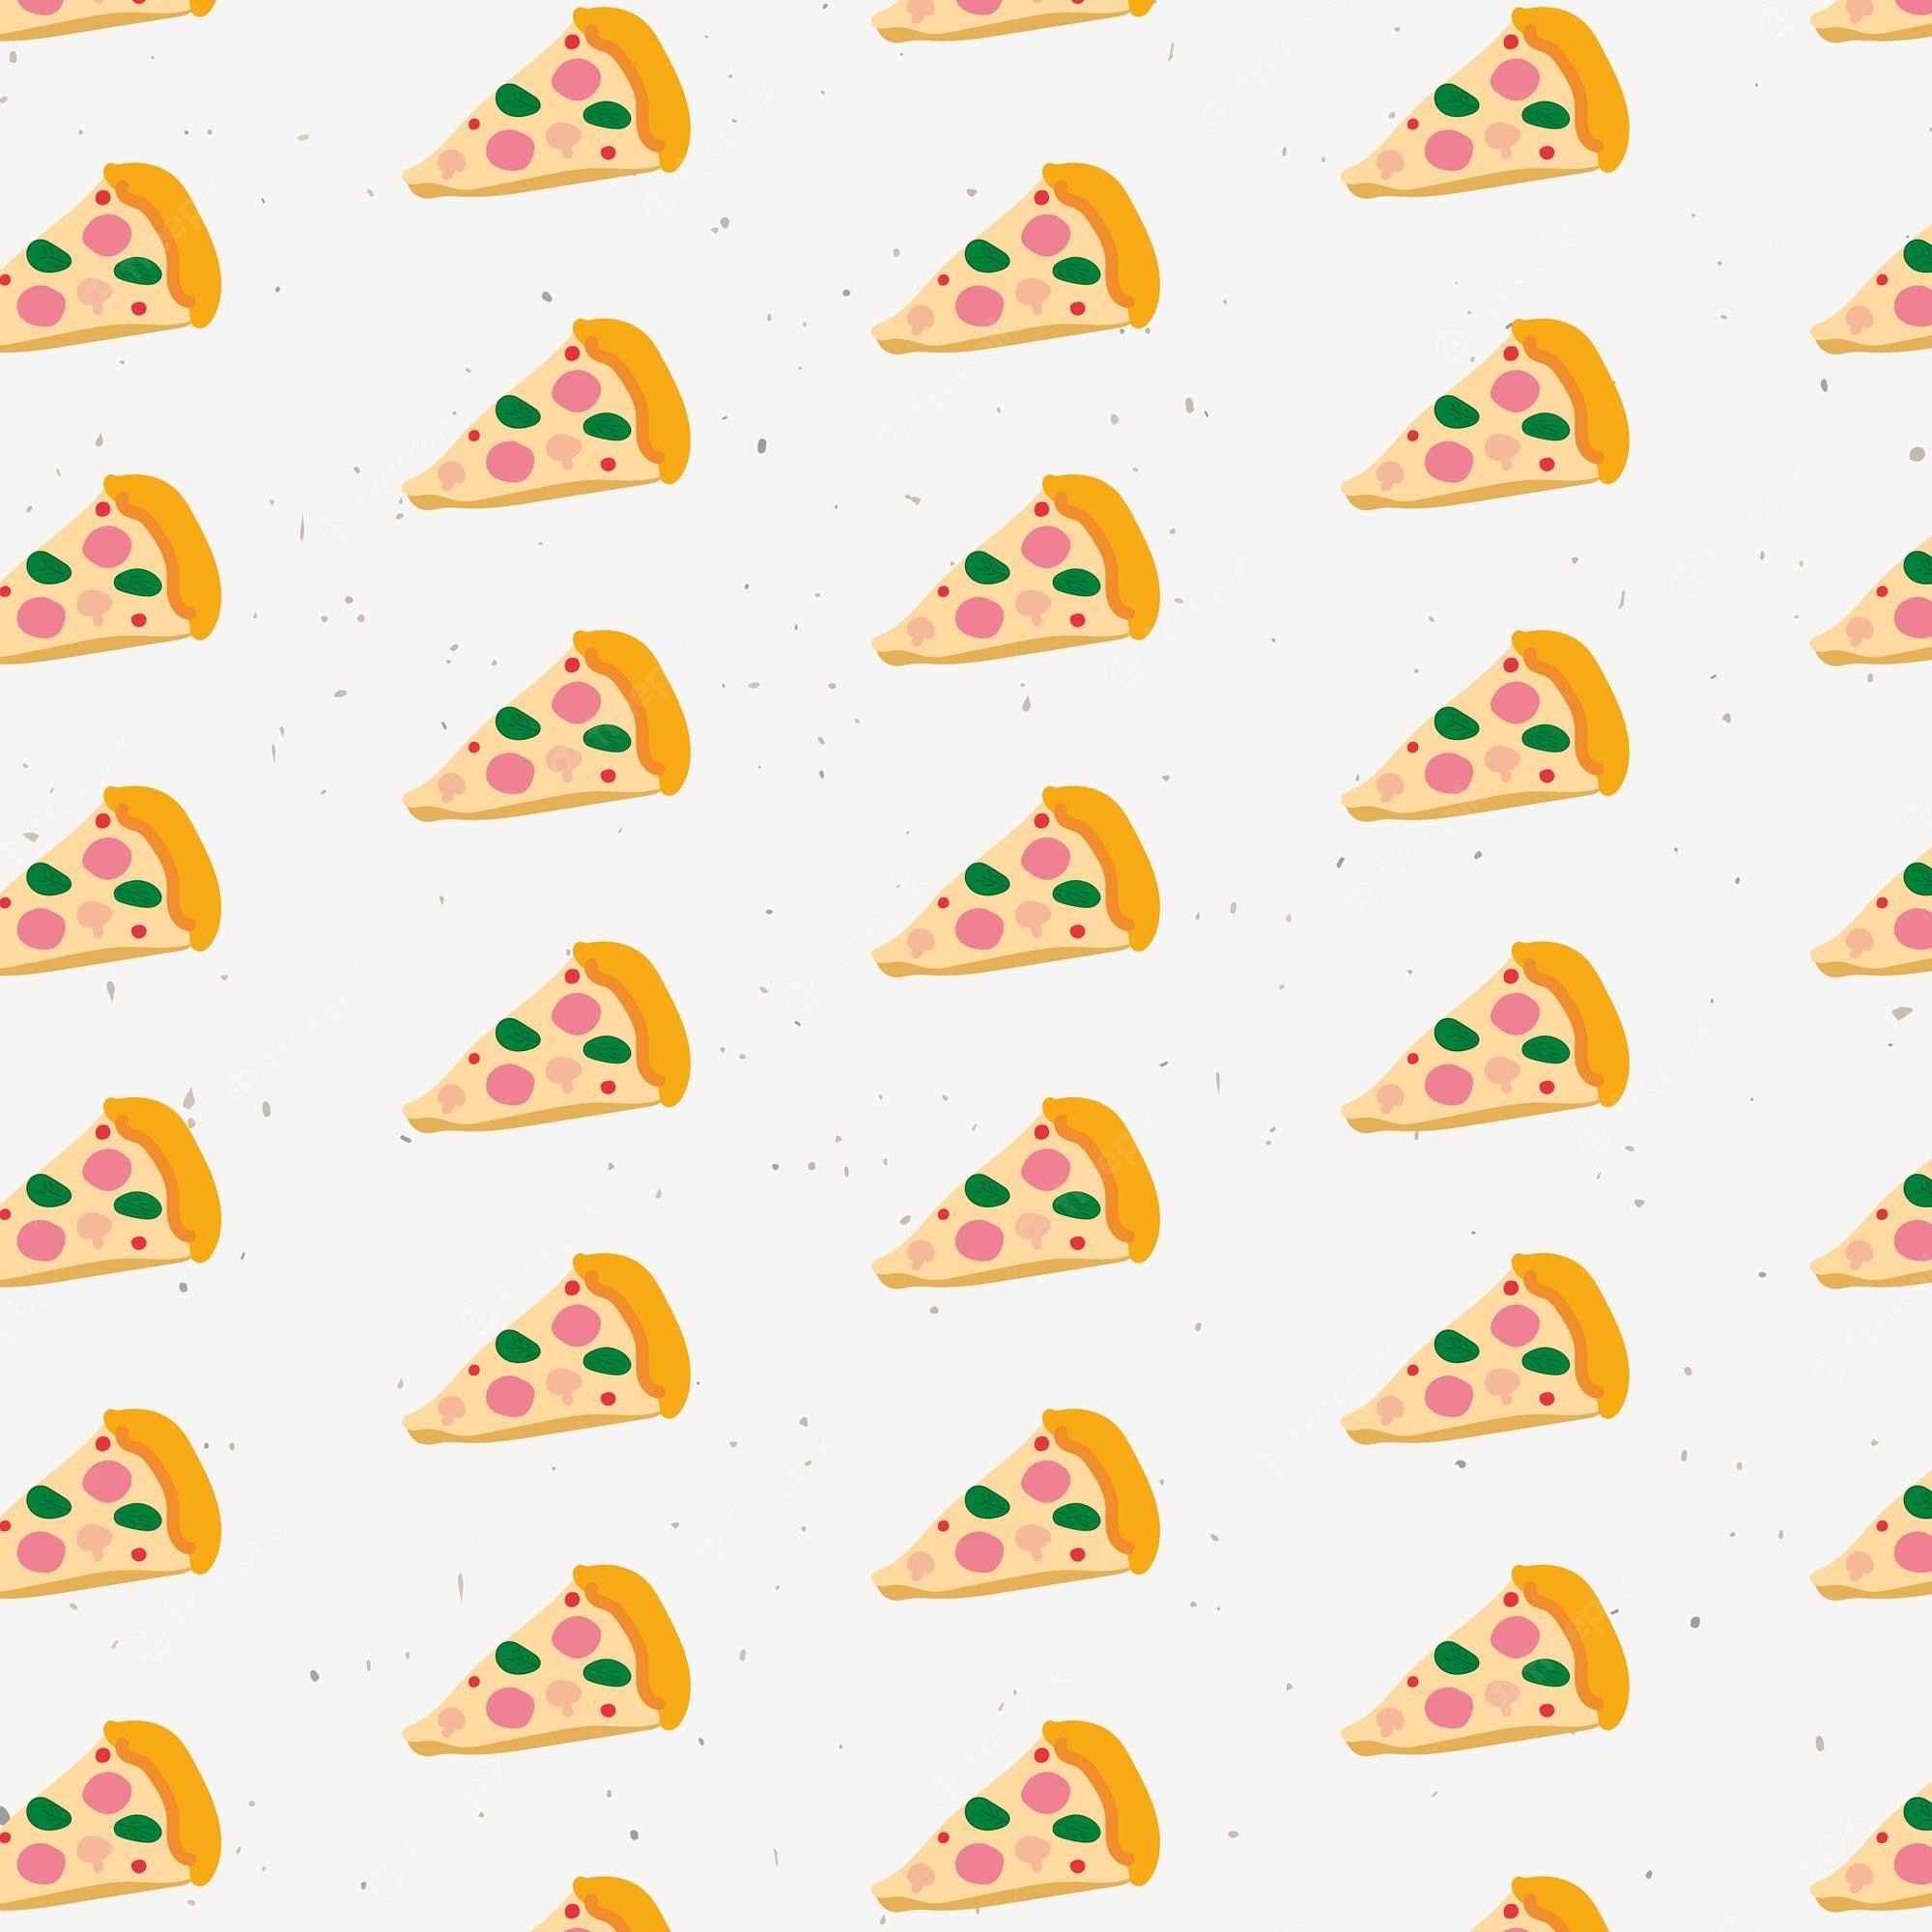 Pizza wallpaper Vectors & Illustrations for Free Download